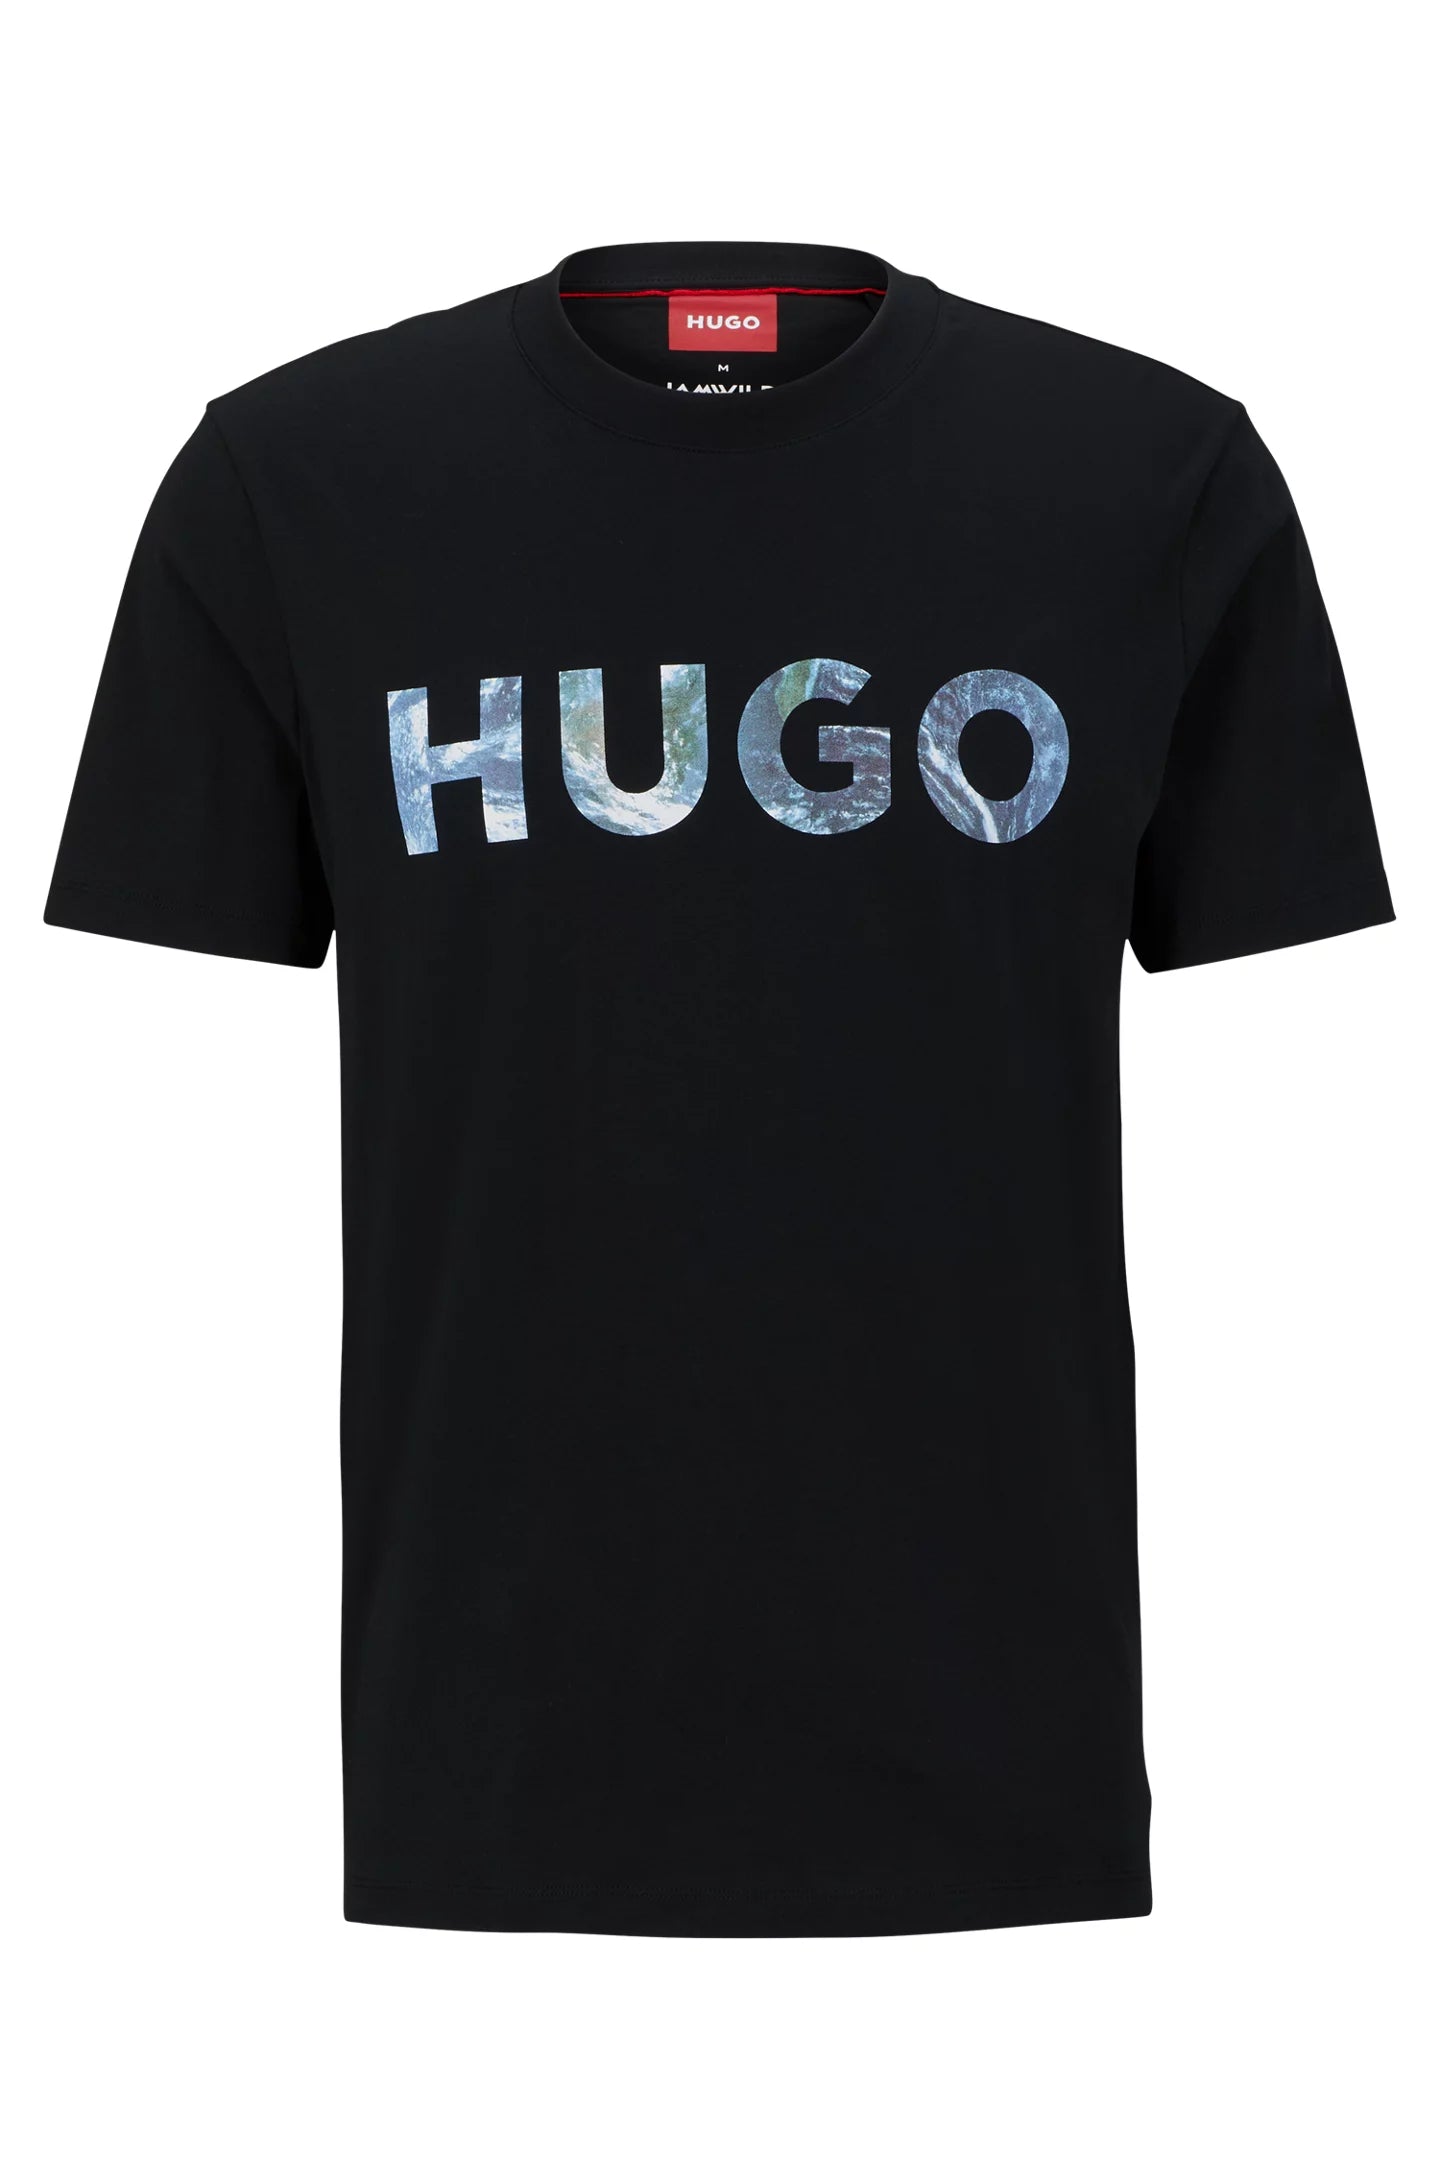 Camiseta HUGO - 50501984 001